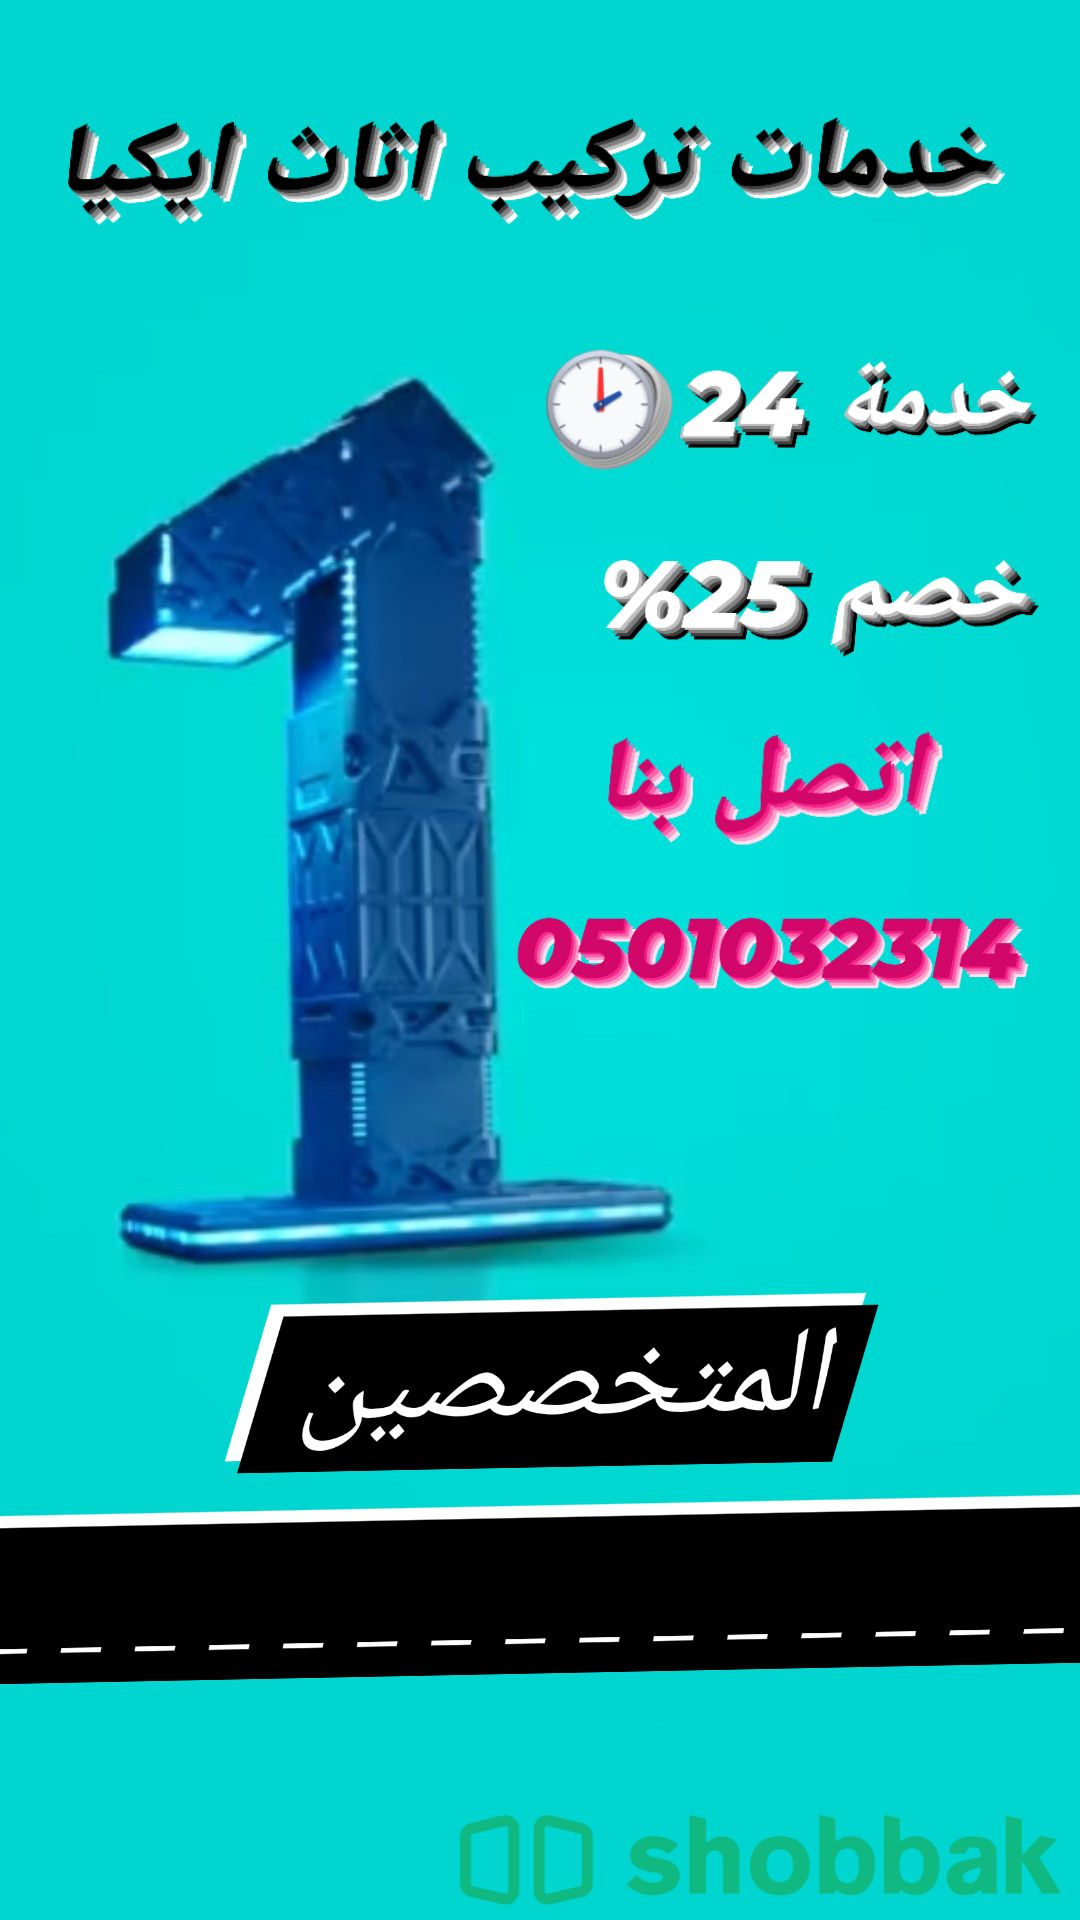 شركة تركيب ستائر بالمدينة المنورة 0501032314 اتصل الان  Shobbak Saudi Arabia